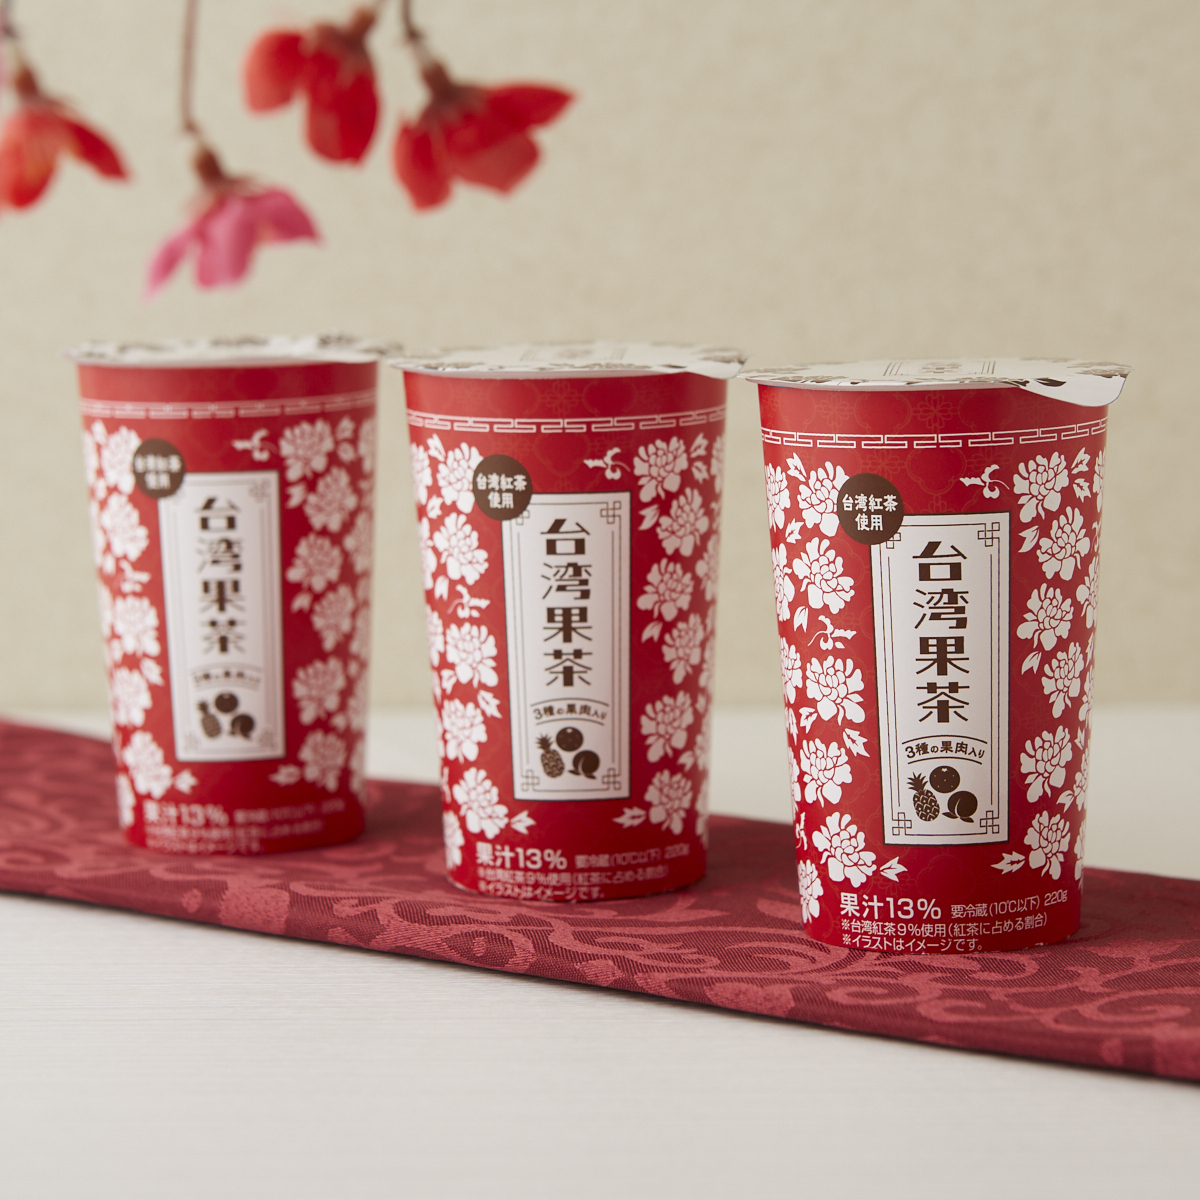 「台湾果茶」が発売中♪ 紅茶にパイン・みかん・桃の果肉が入っていておいしいです(^^) #ローソン lawson.co.jp/recommend/orig…